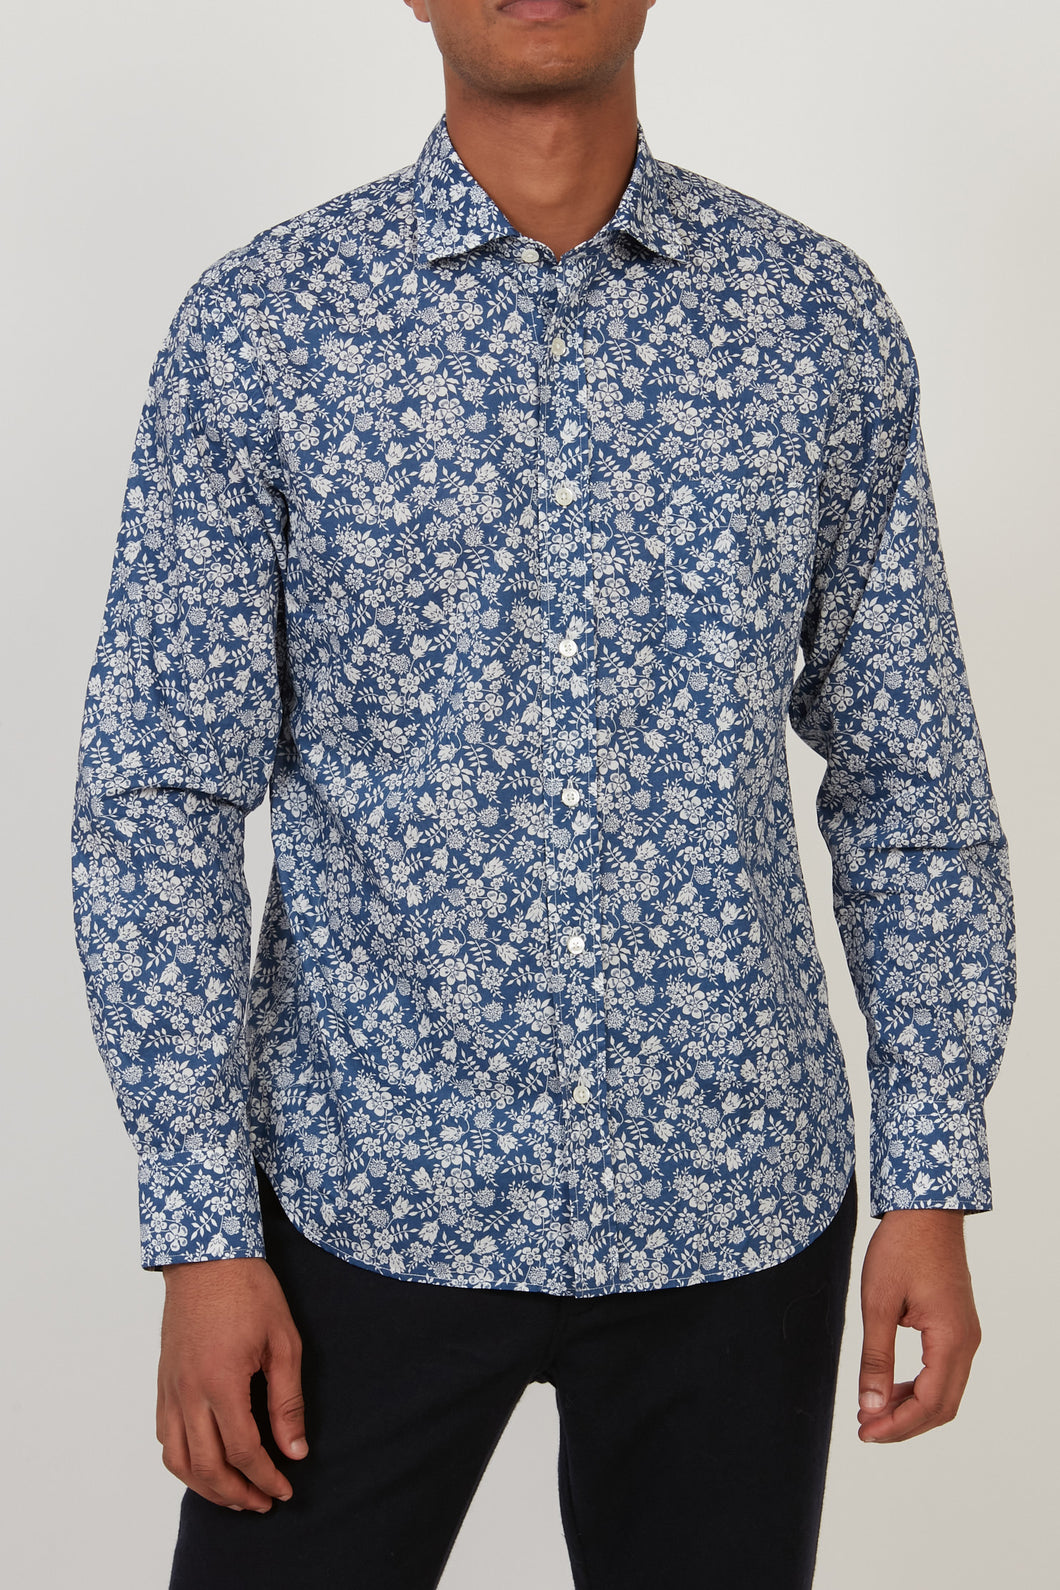 Hartford Men's Shirt in Blue/White Print